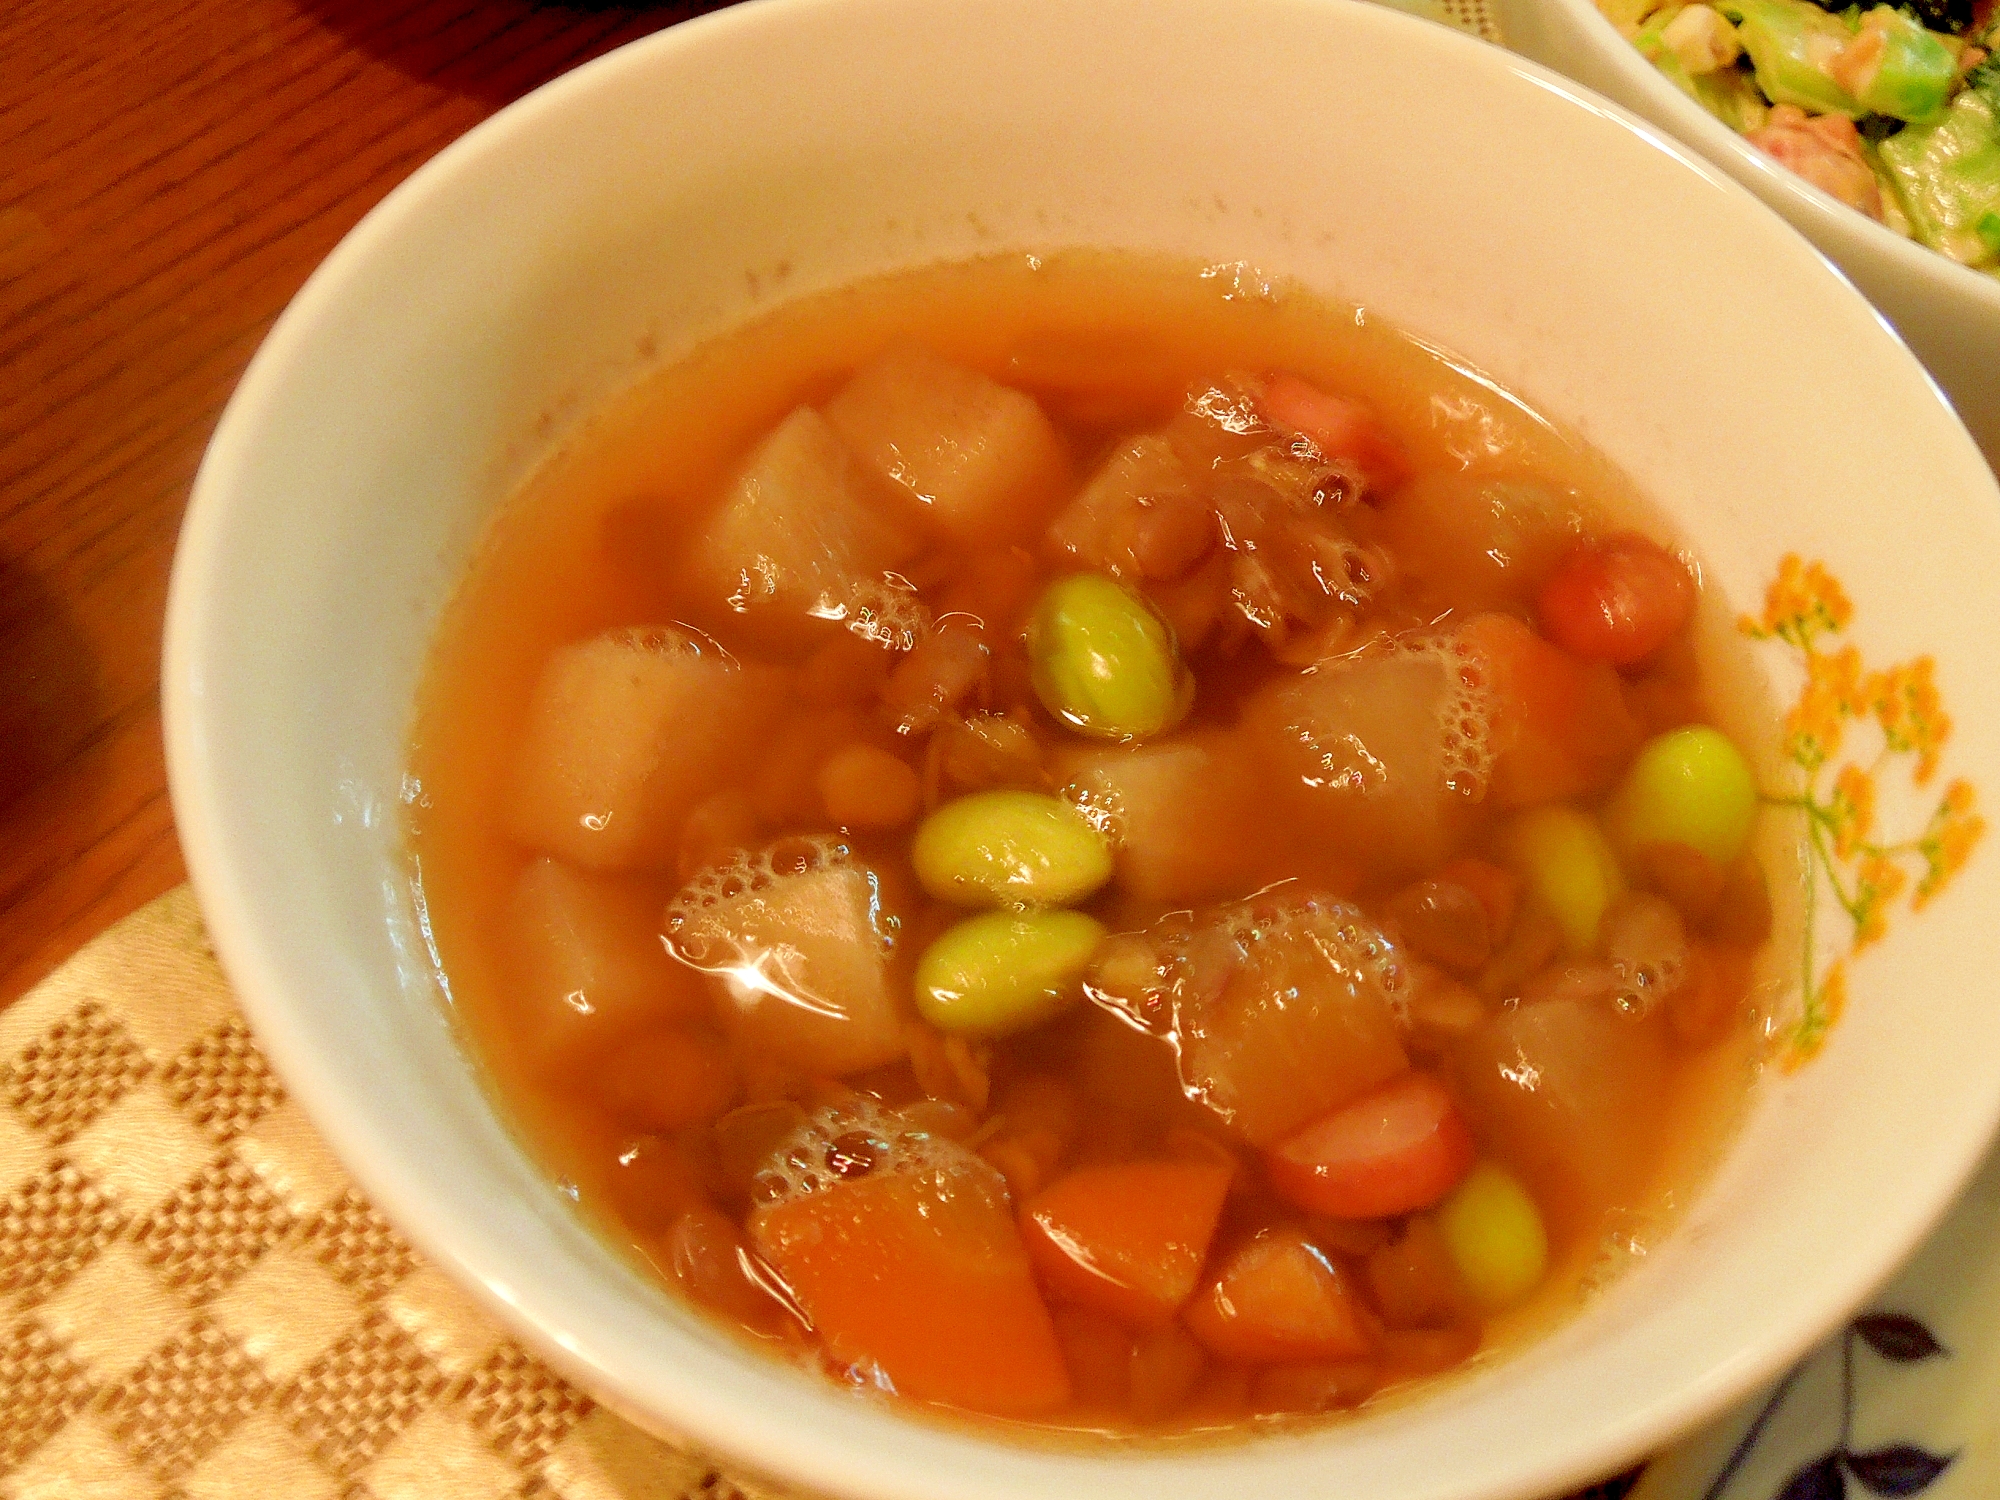 レンズ豆の和風スープ